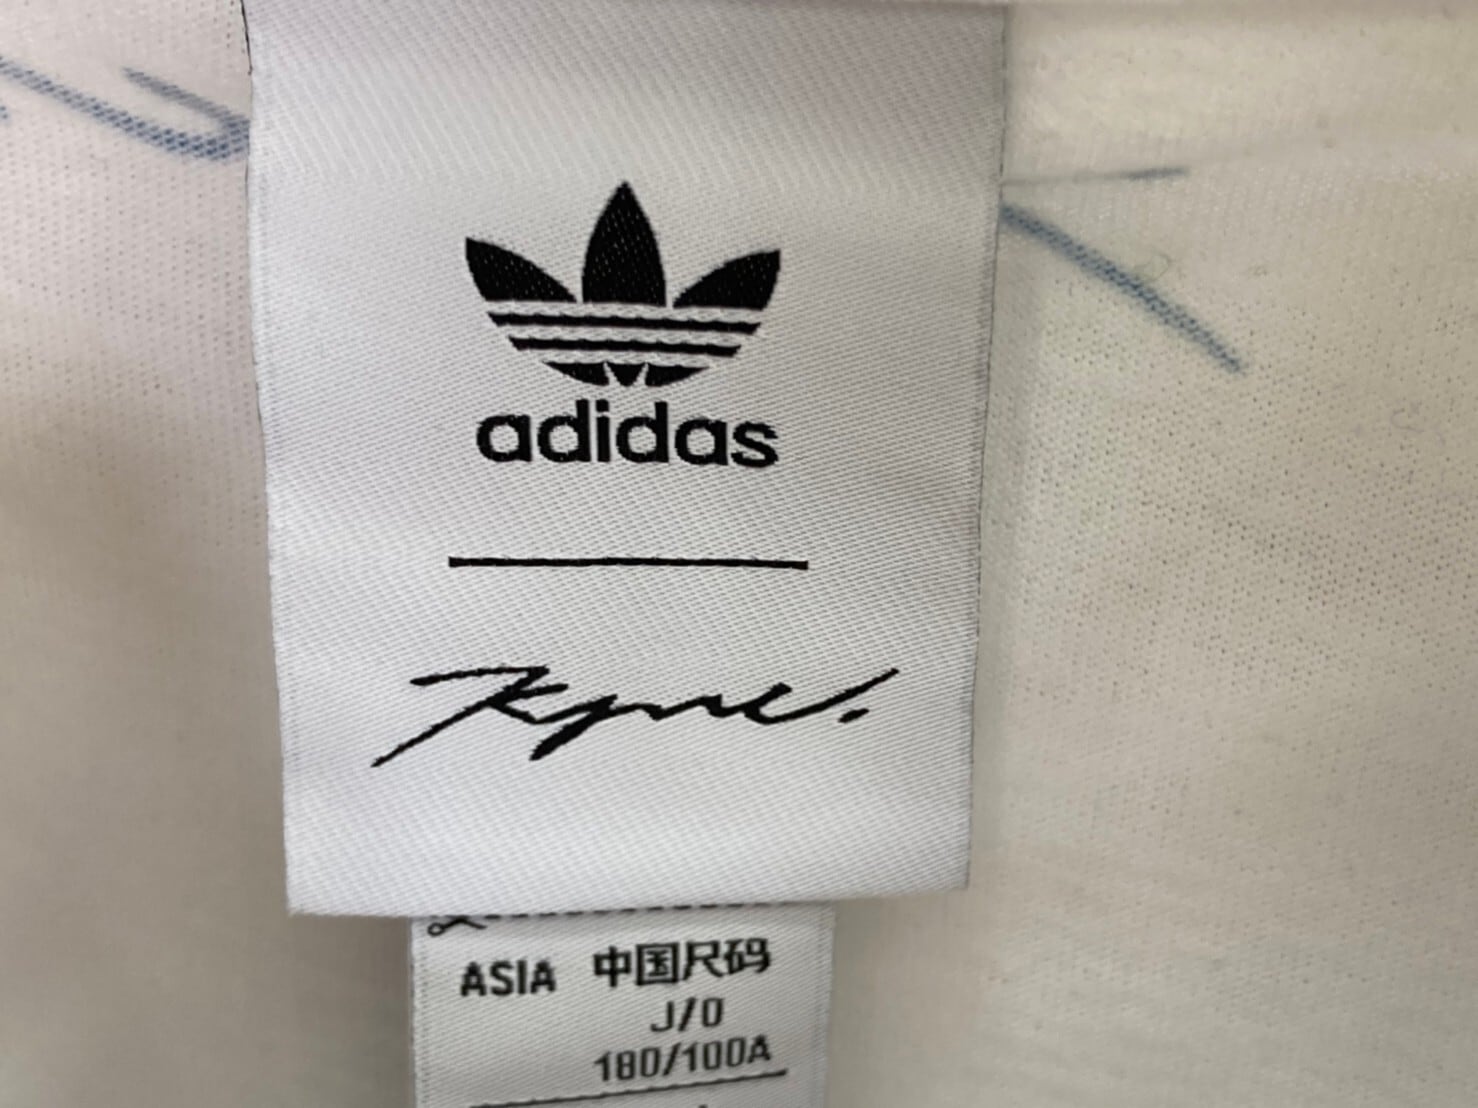 XL adidas kyne グラフィック Tシャツ HA9996